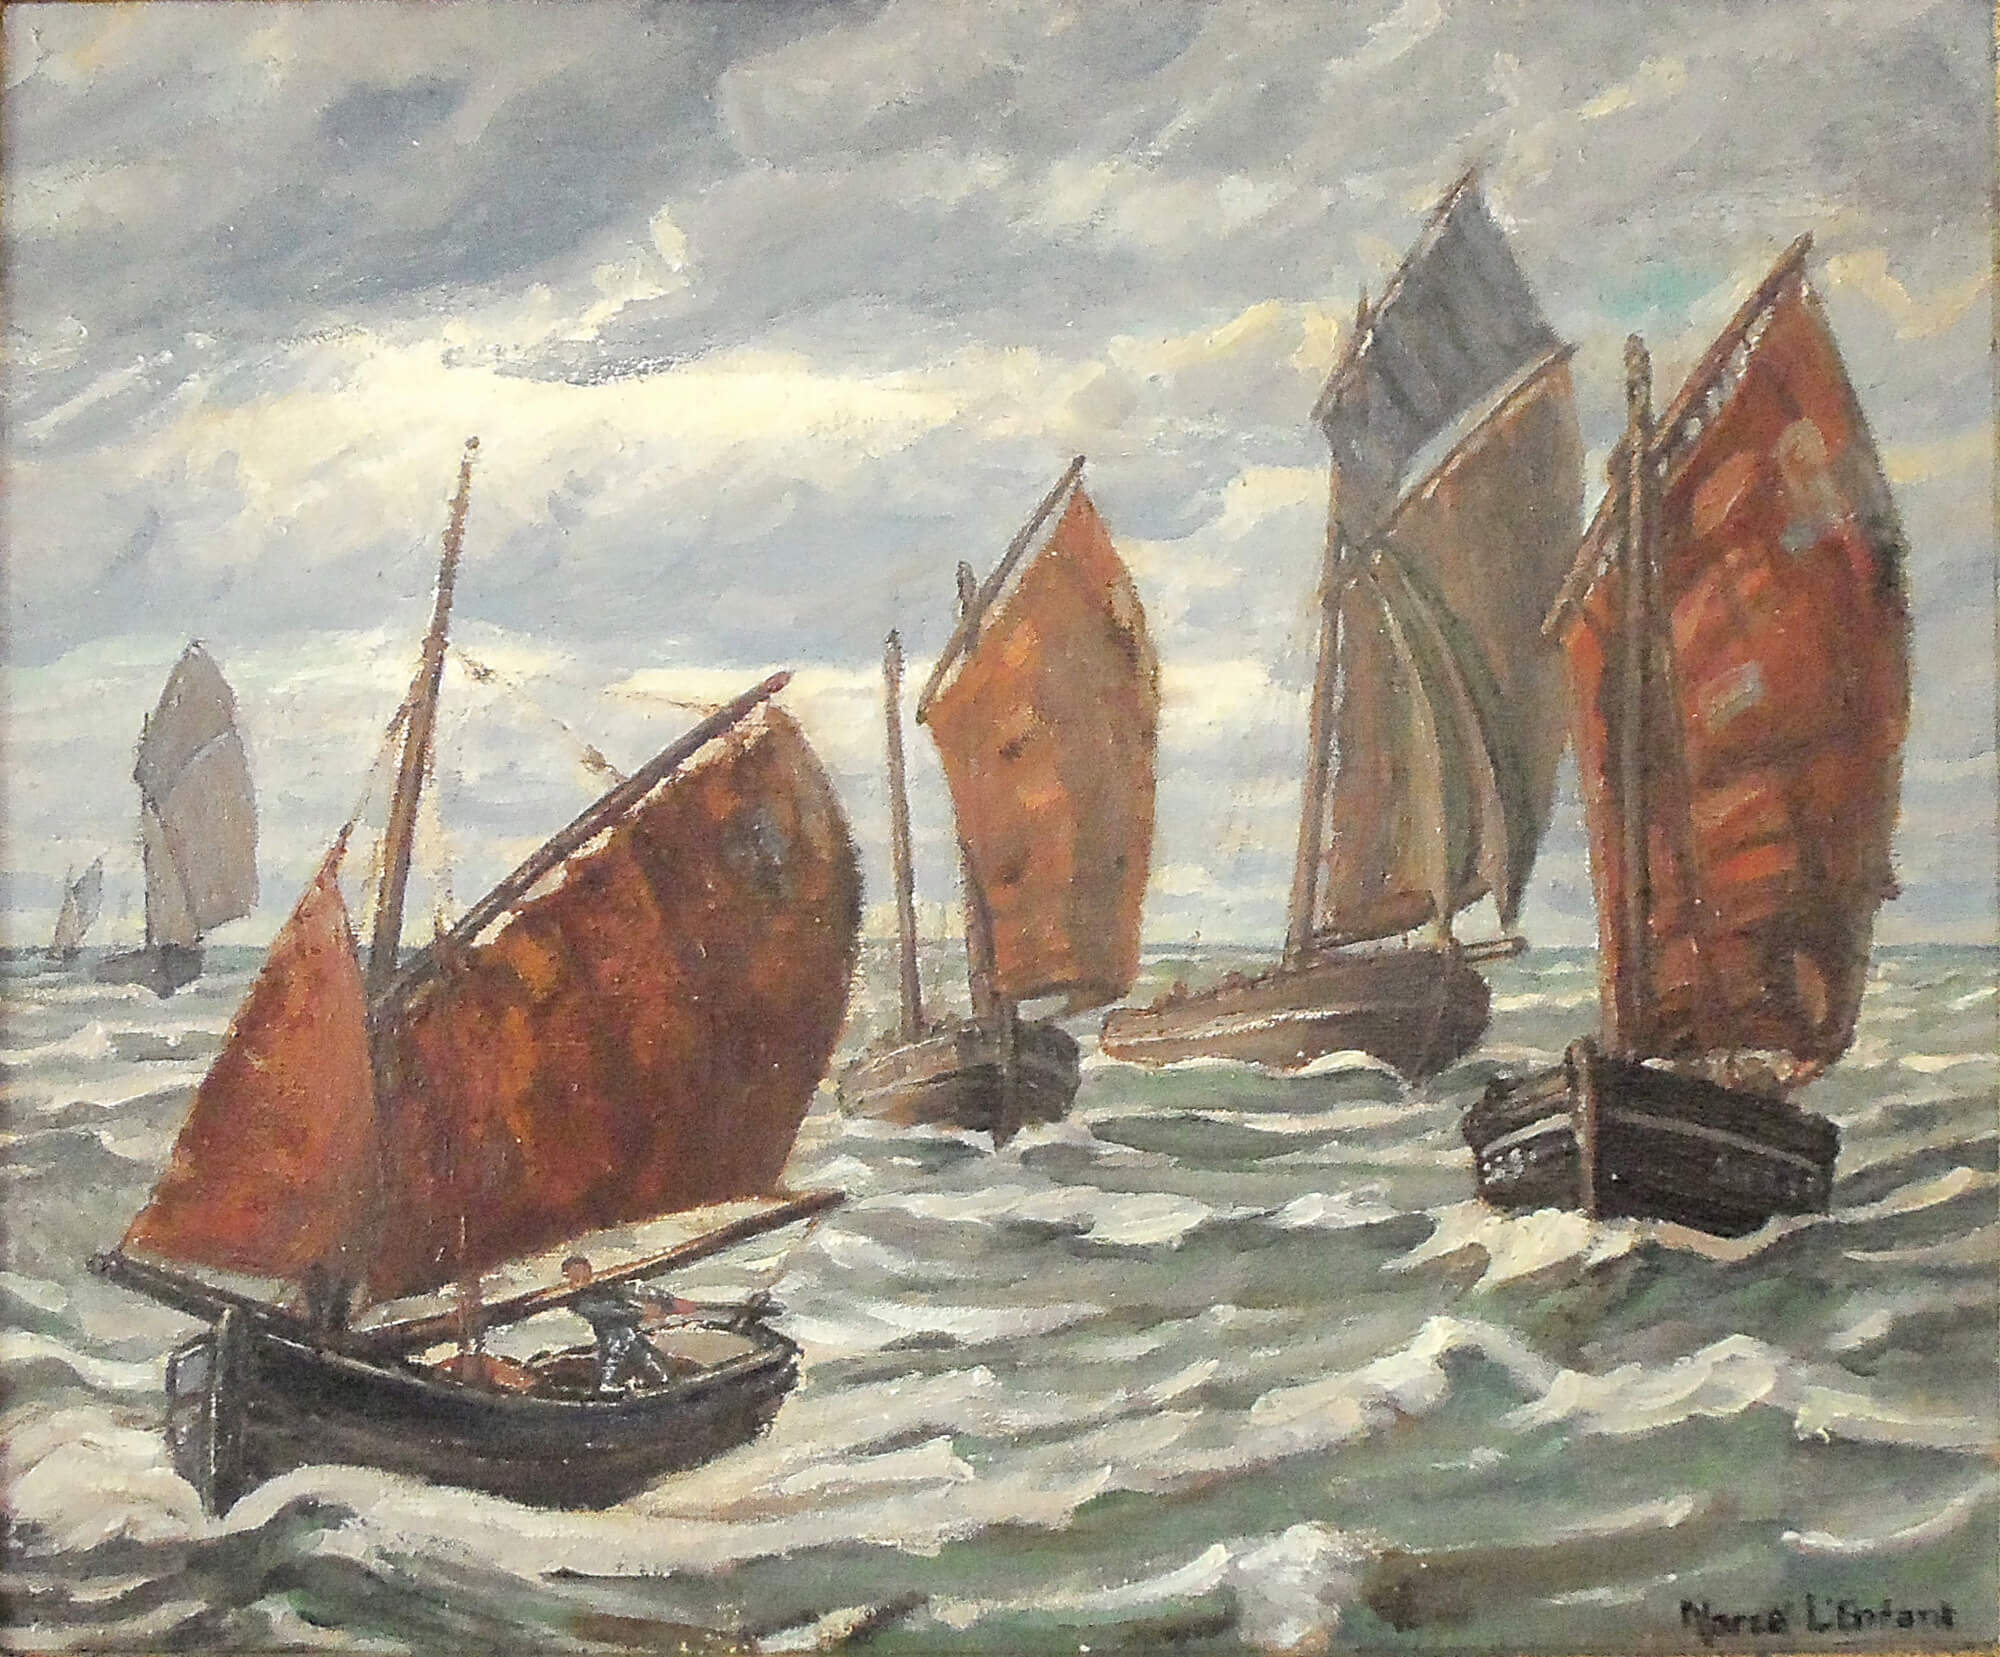 Cette toile représente des chalutiers de pêcheurs bretons sur des flots tumultueux.